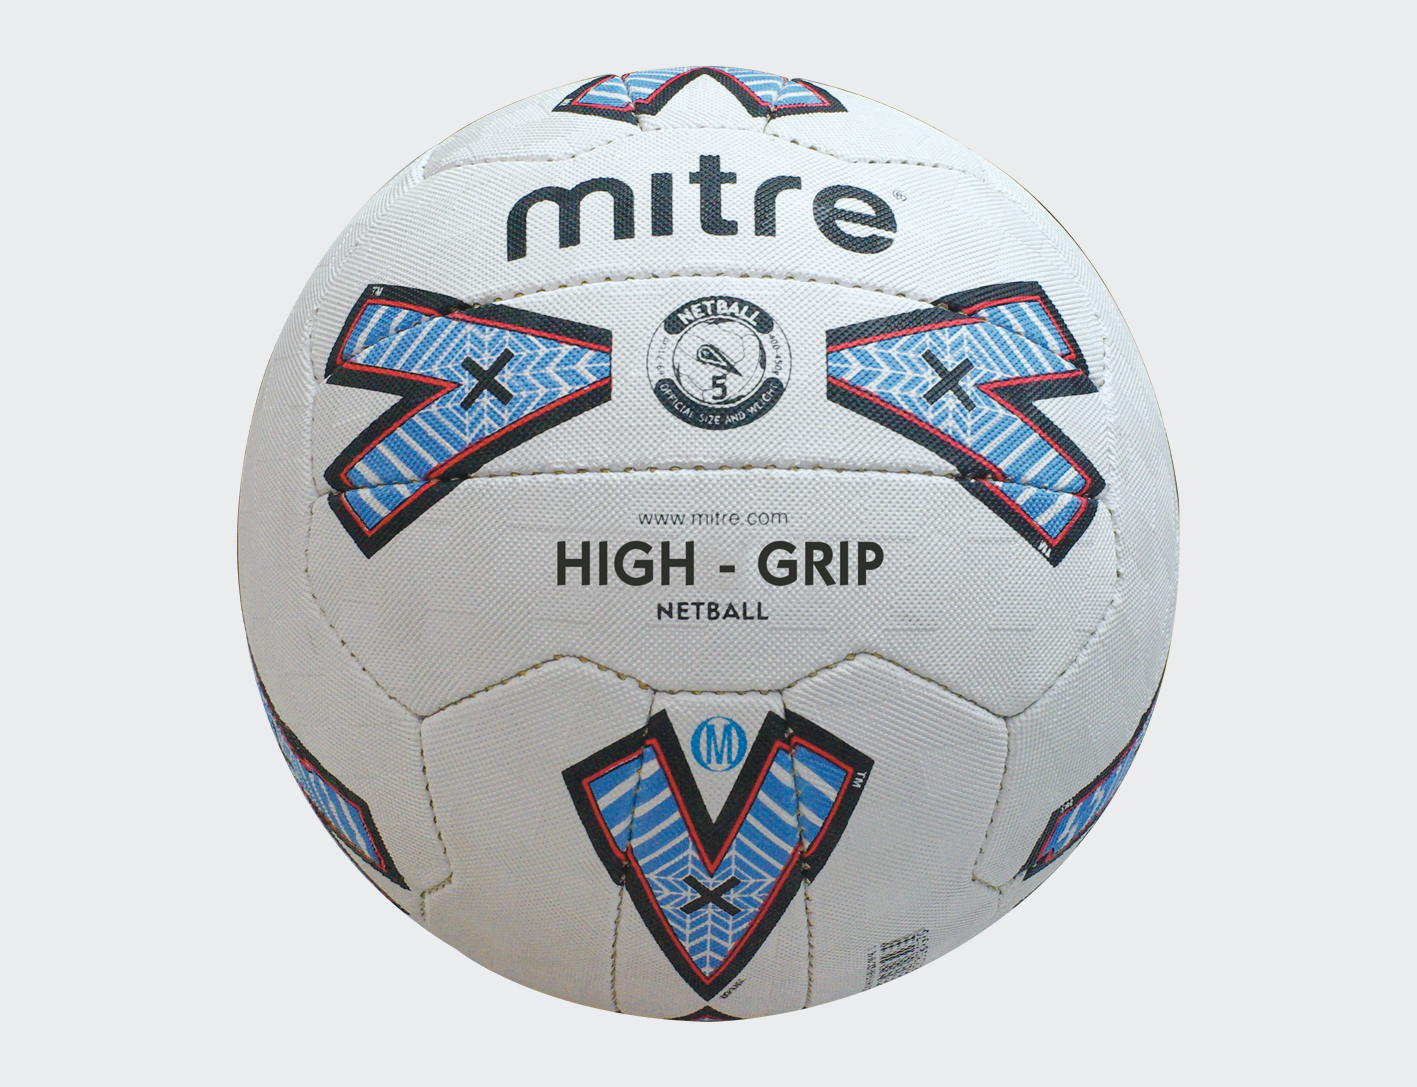 High Grip Netball (Size